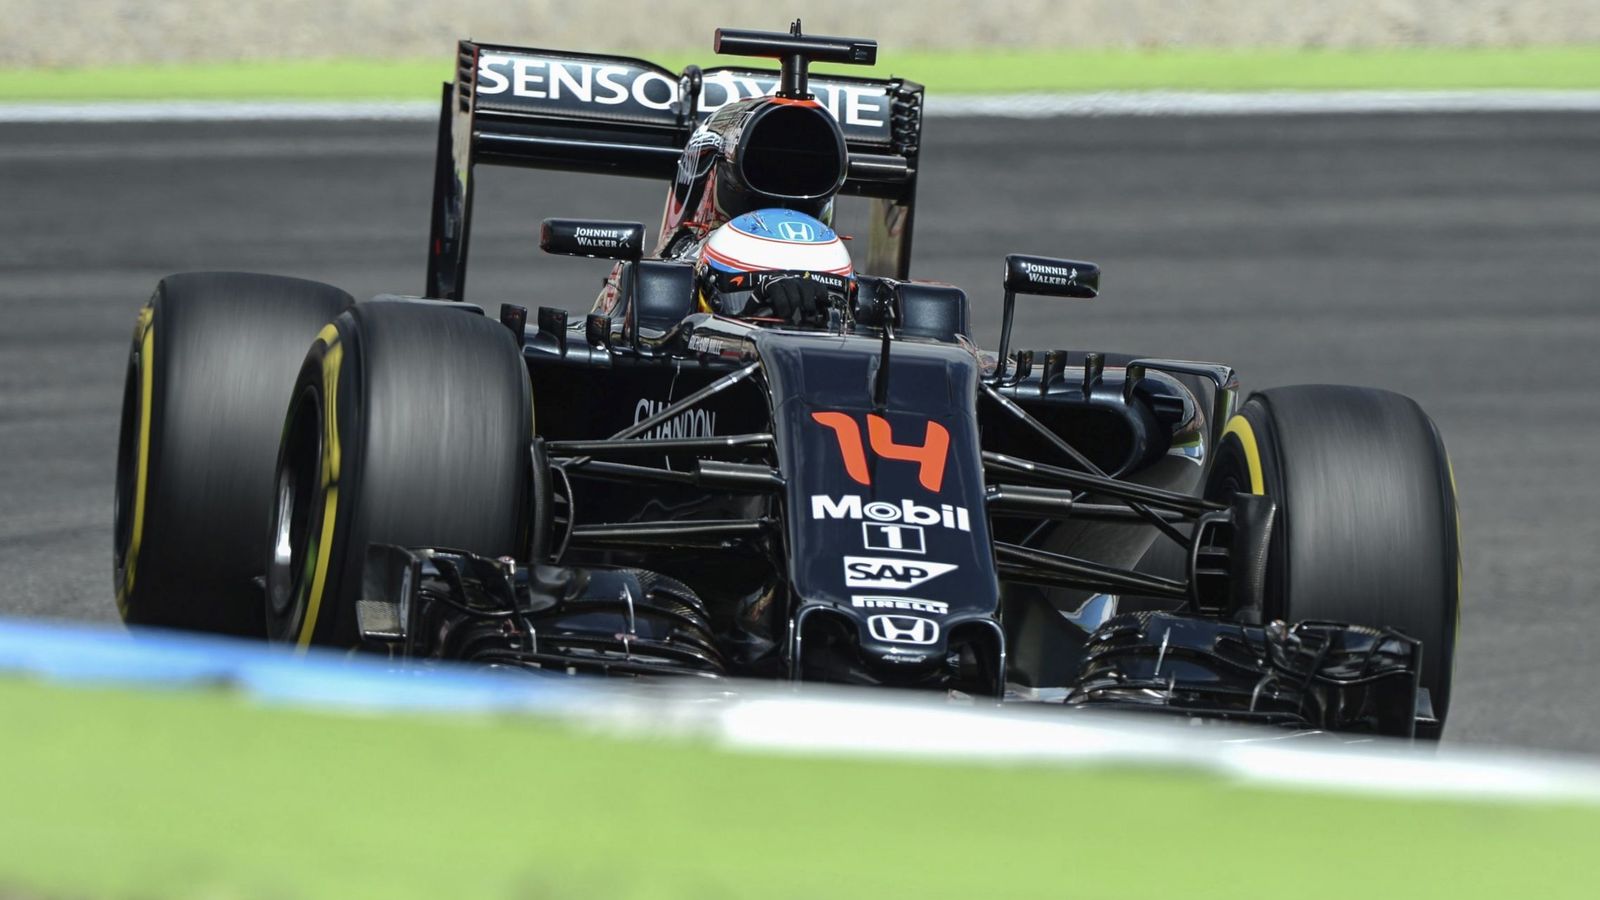 Foto: Fernando Alonso en su McLaren durante el GP de Alemania.